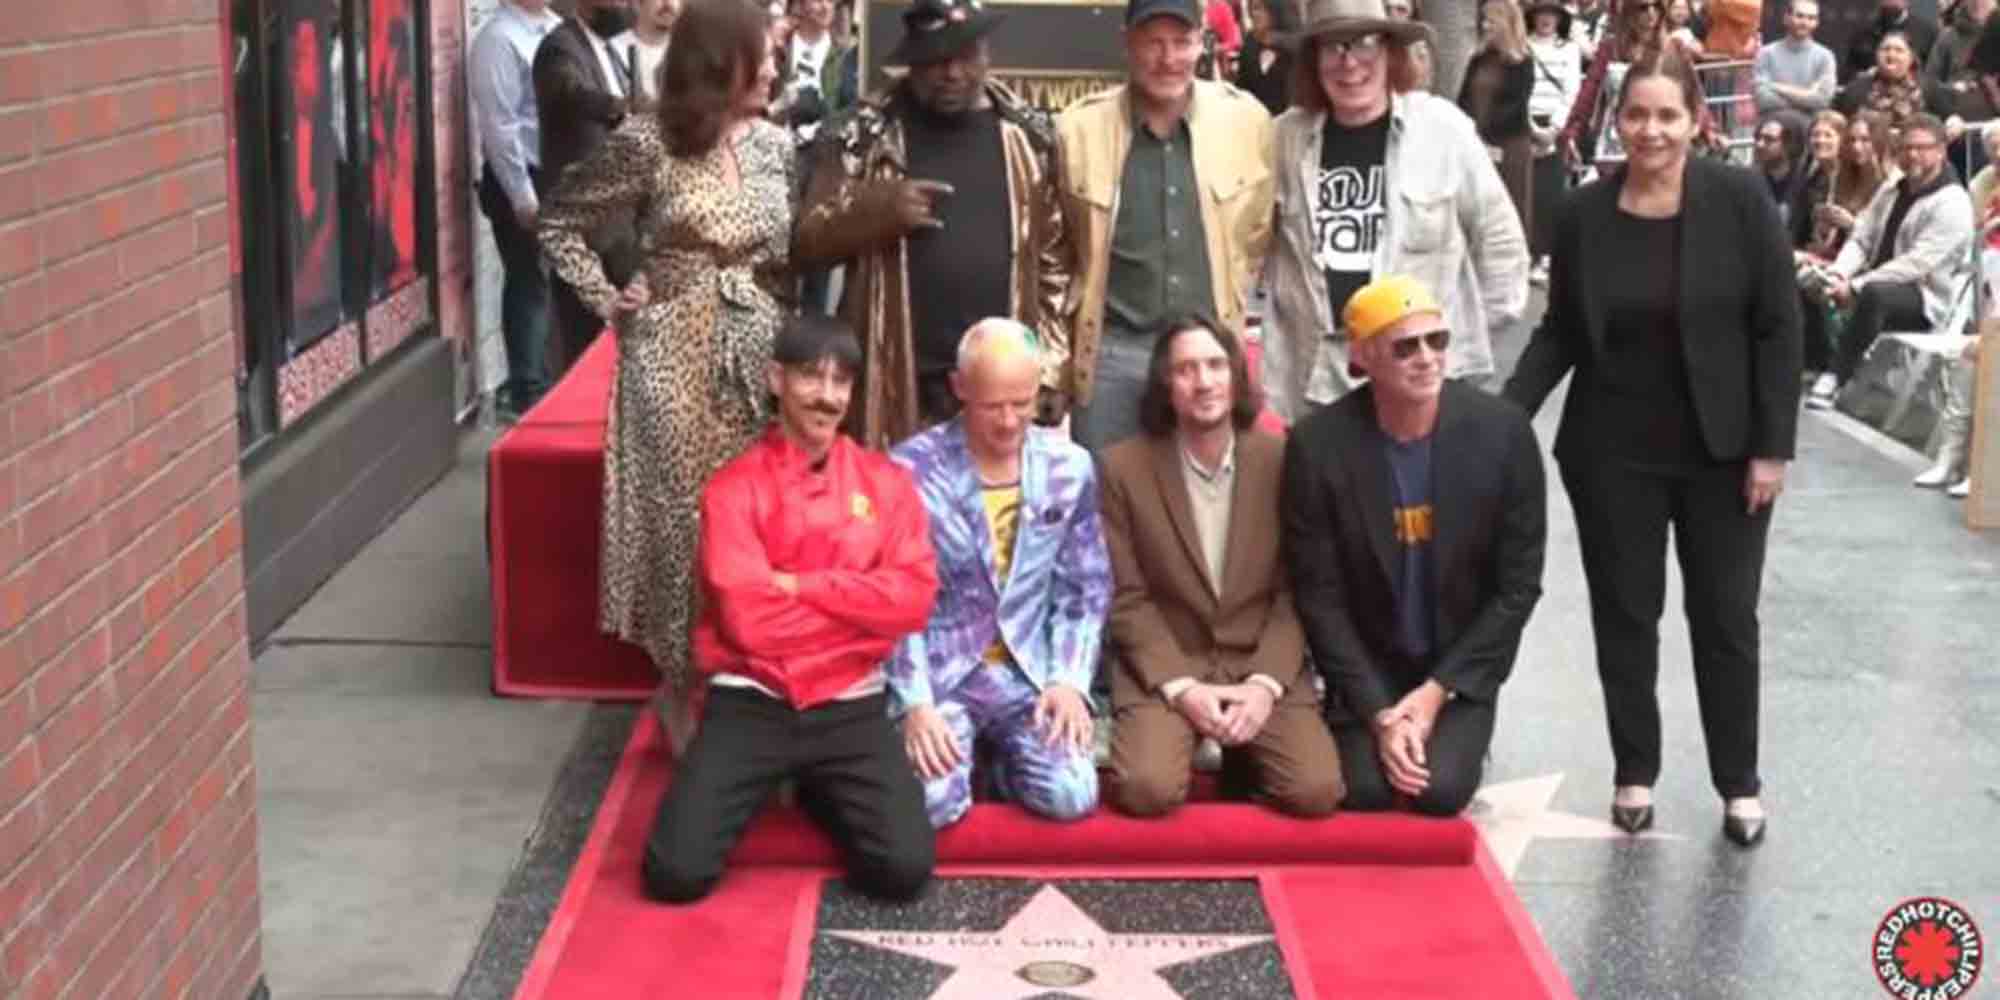 Το συγκρότημα των Red Hot Chili Peppers μπροστά από το αστέρι του στο Χόλιγουντ